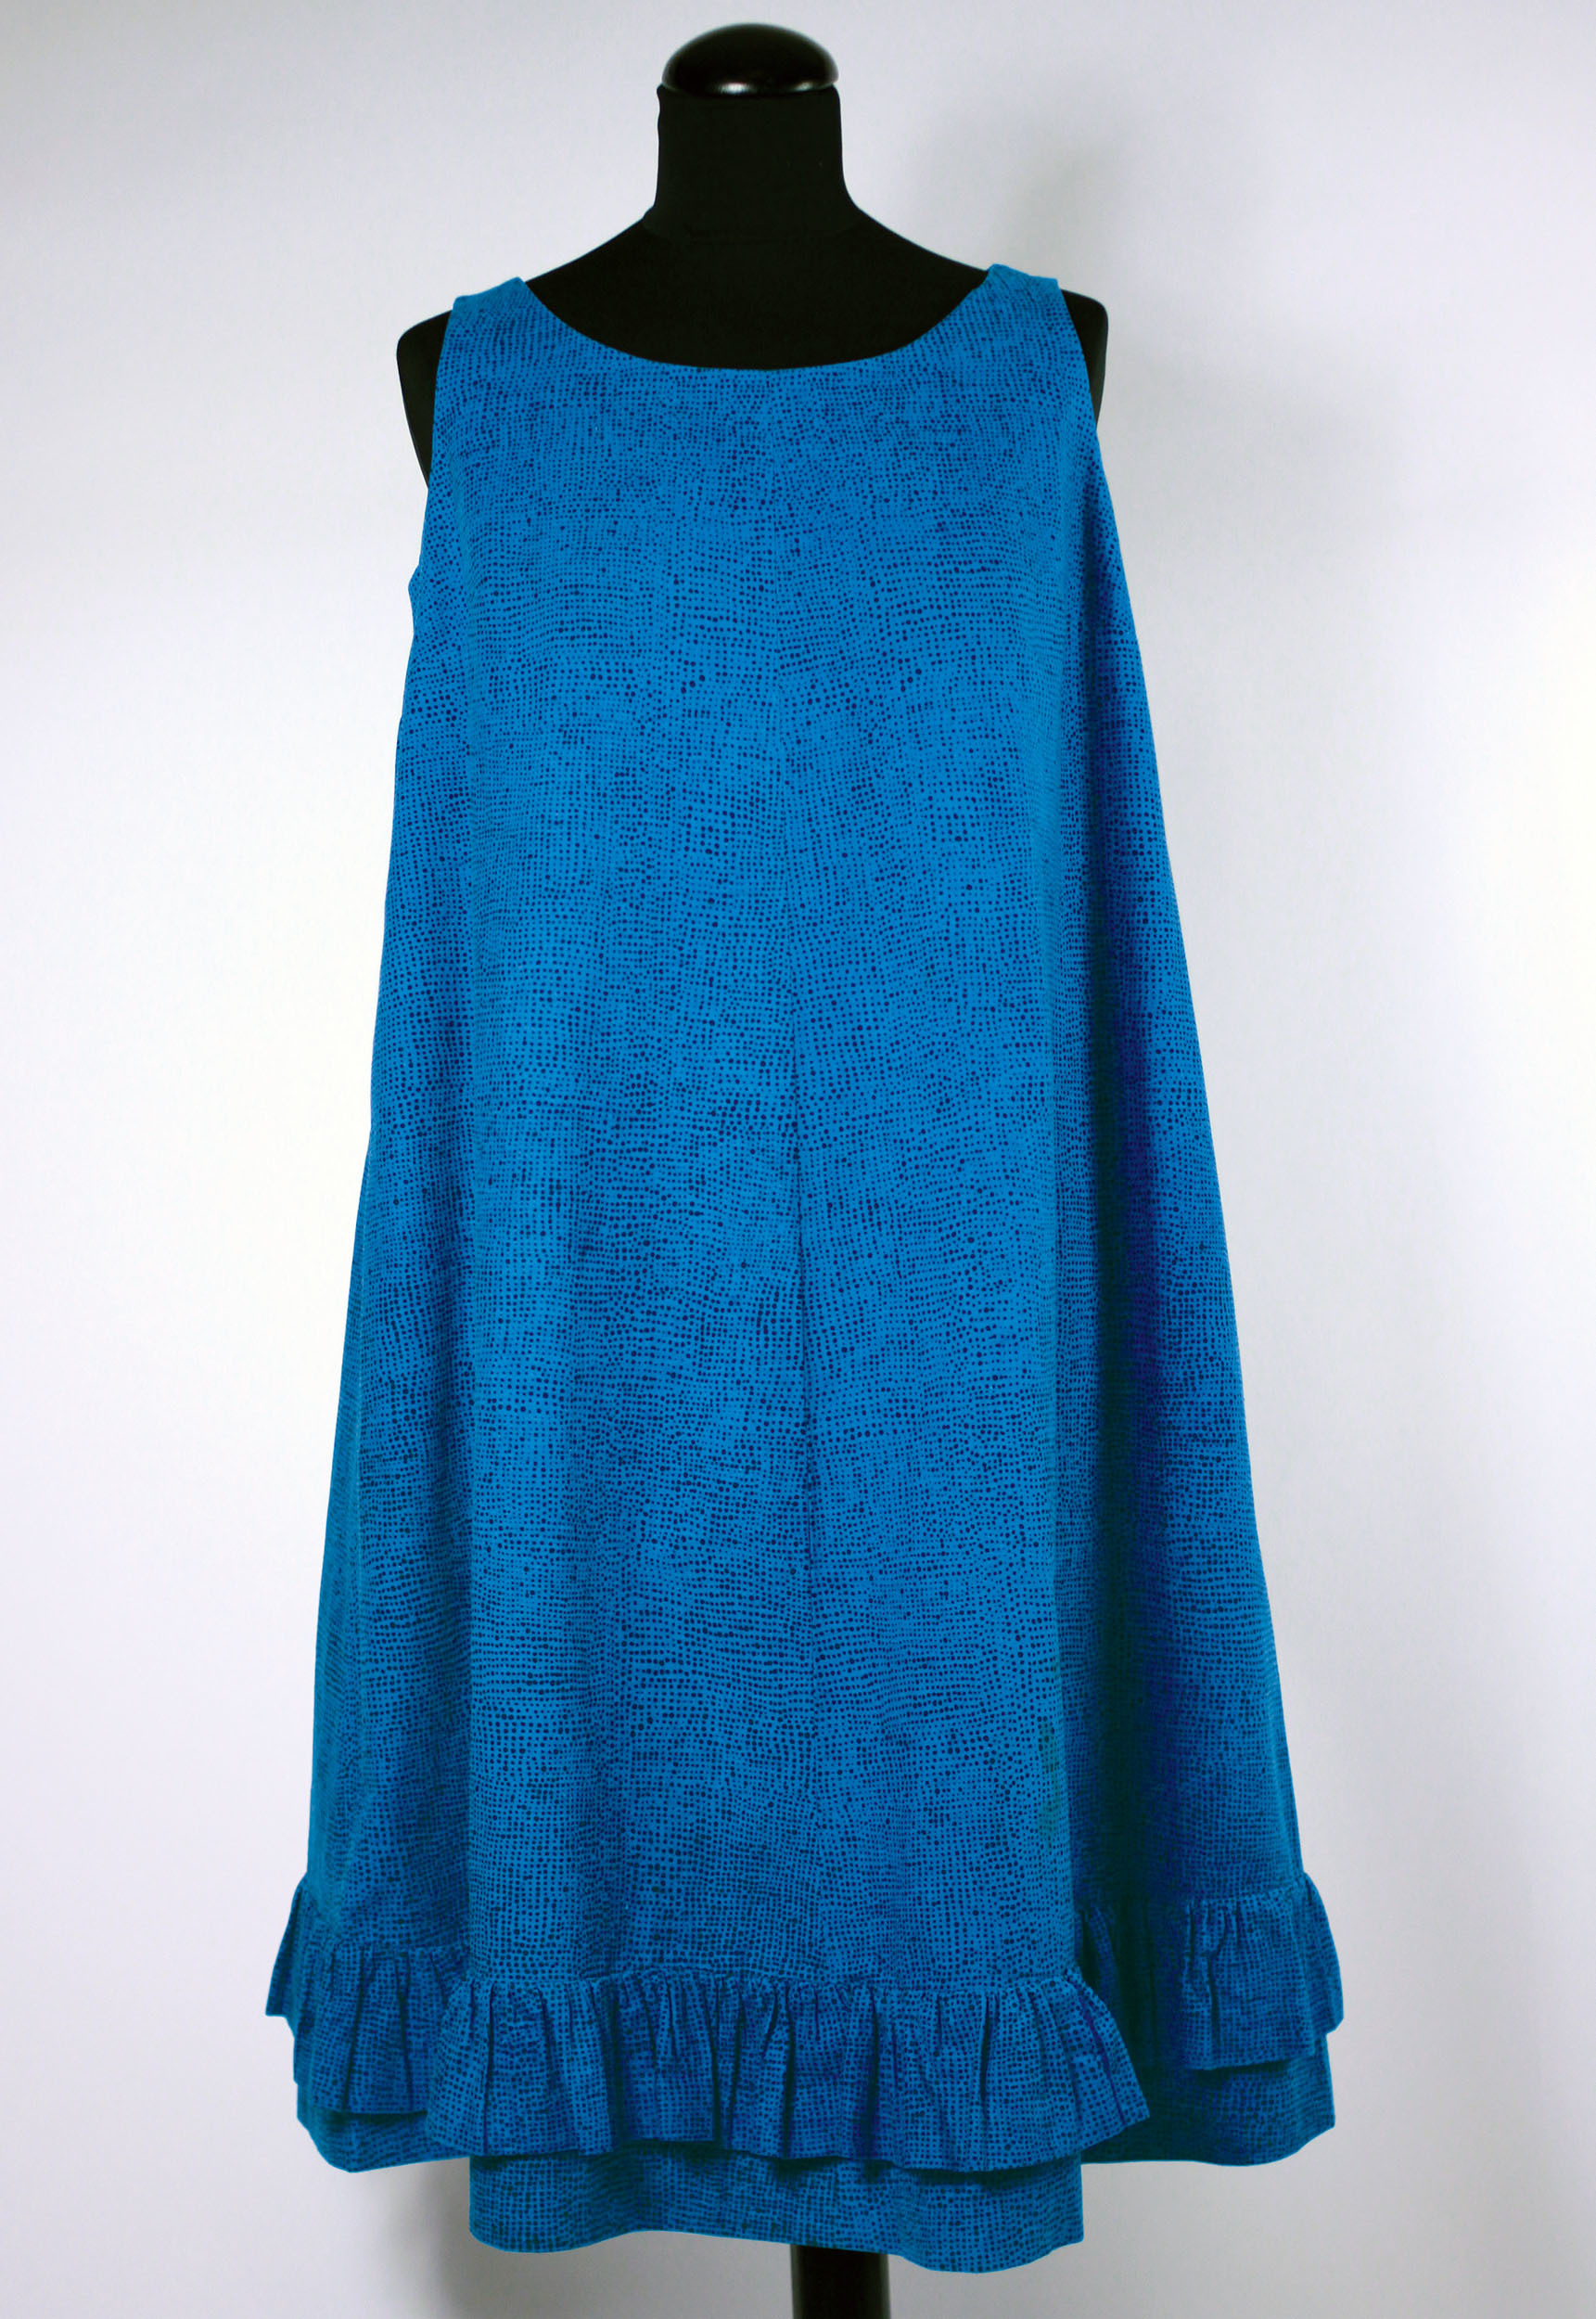 ジャクリーン・ケネディーが購入したドレス≪ヘイルヘルマ≫、1959年　 ファブリック≪ナスティ≫（小さな無頭釘）、1957年、